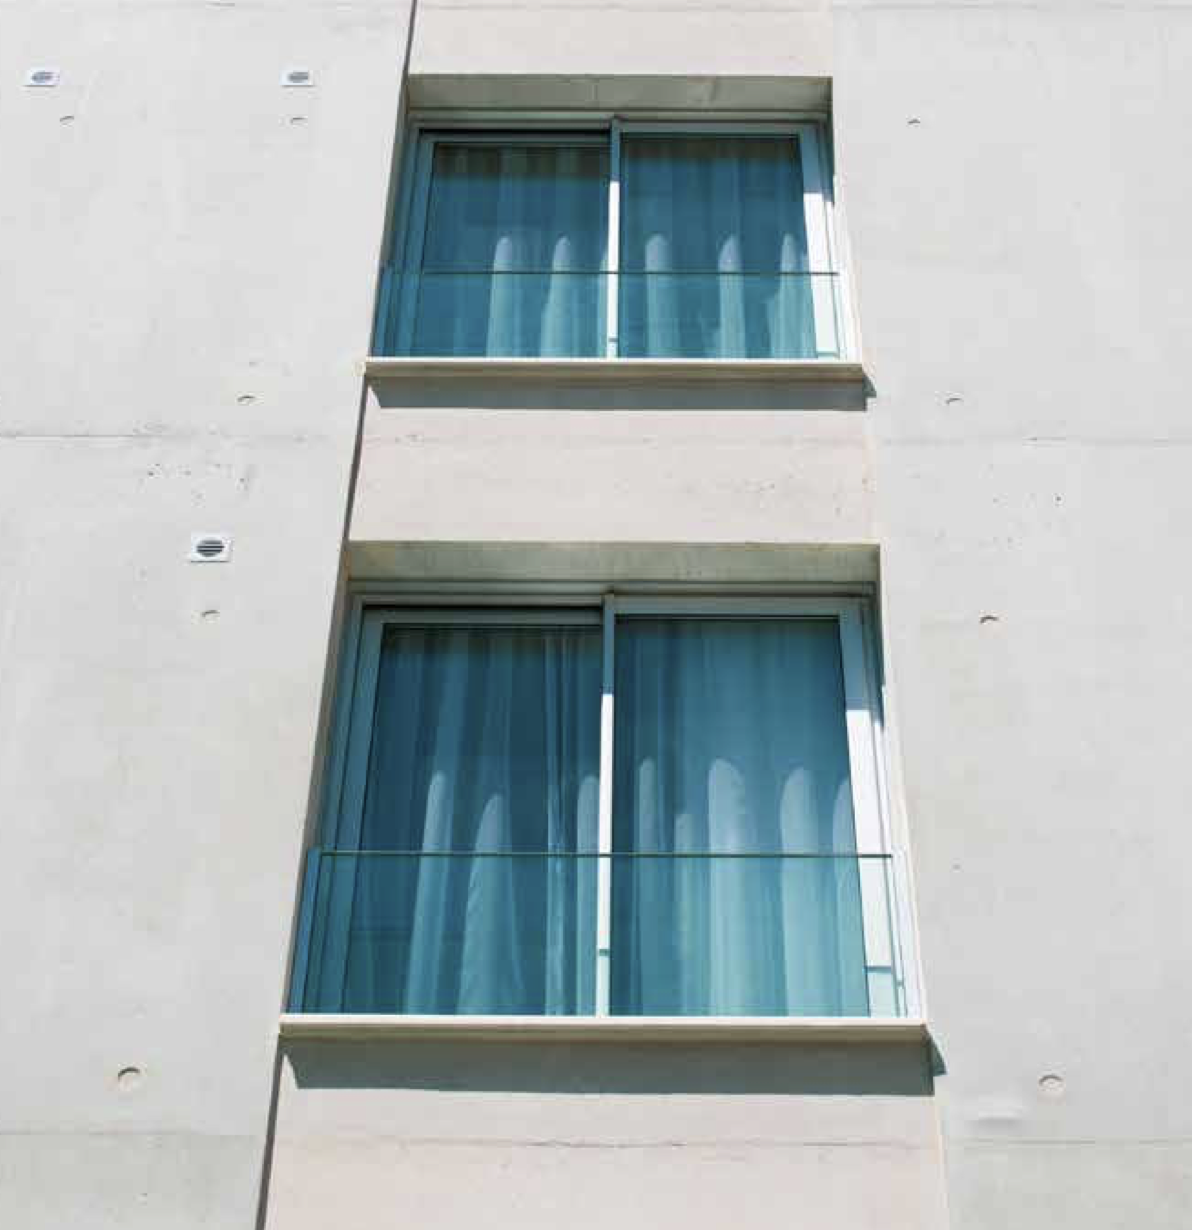 Franse balkons